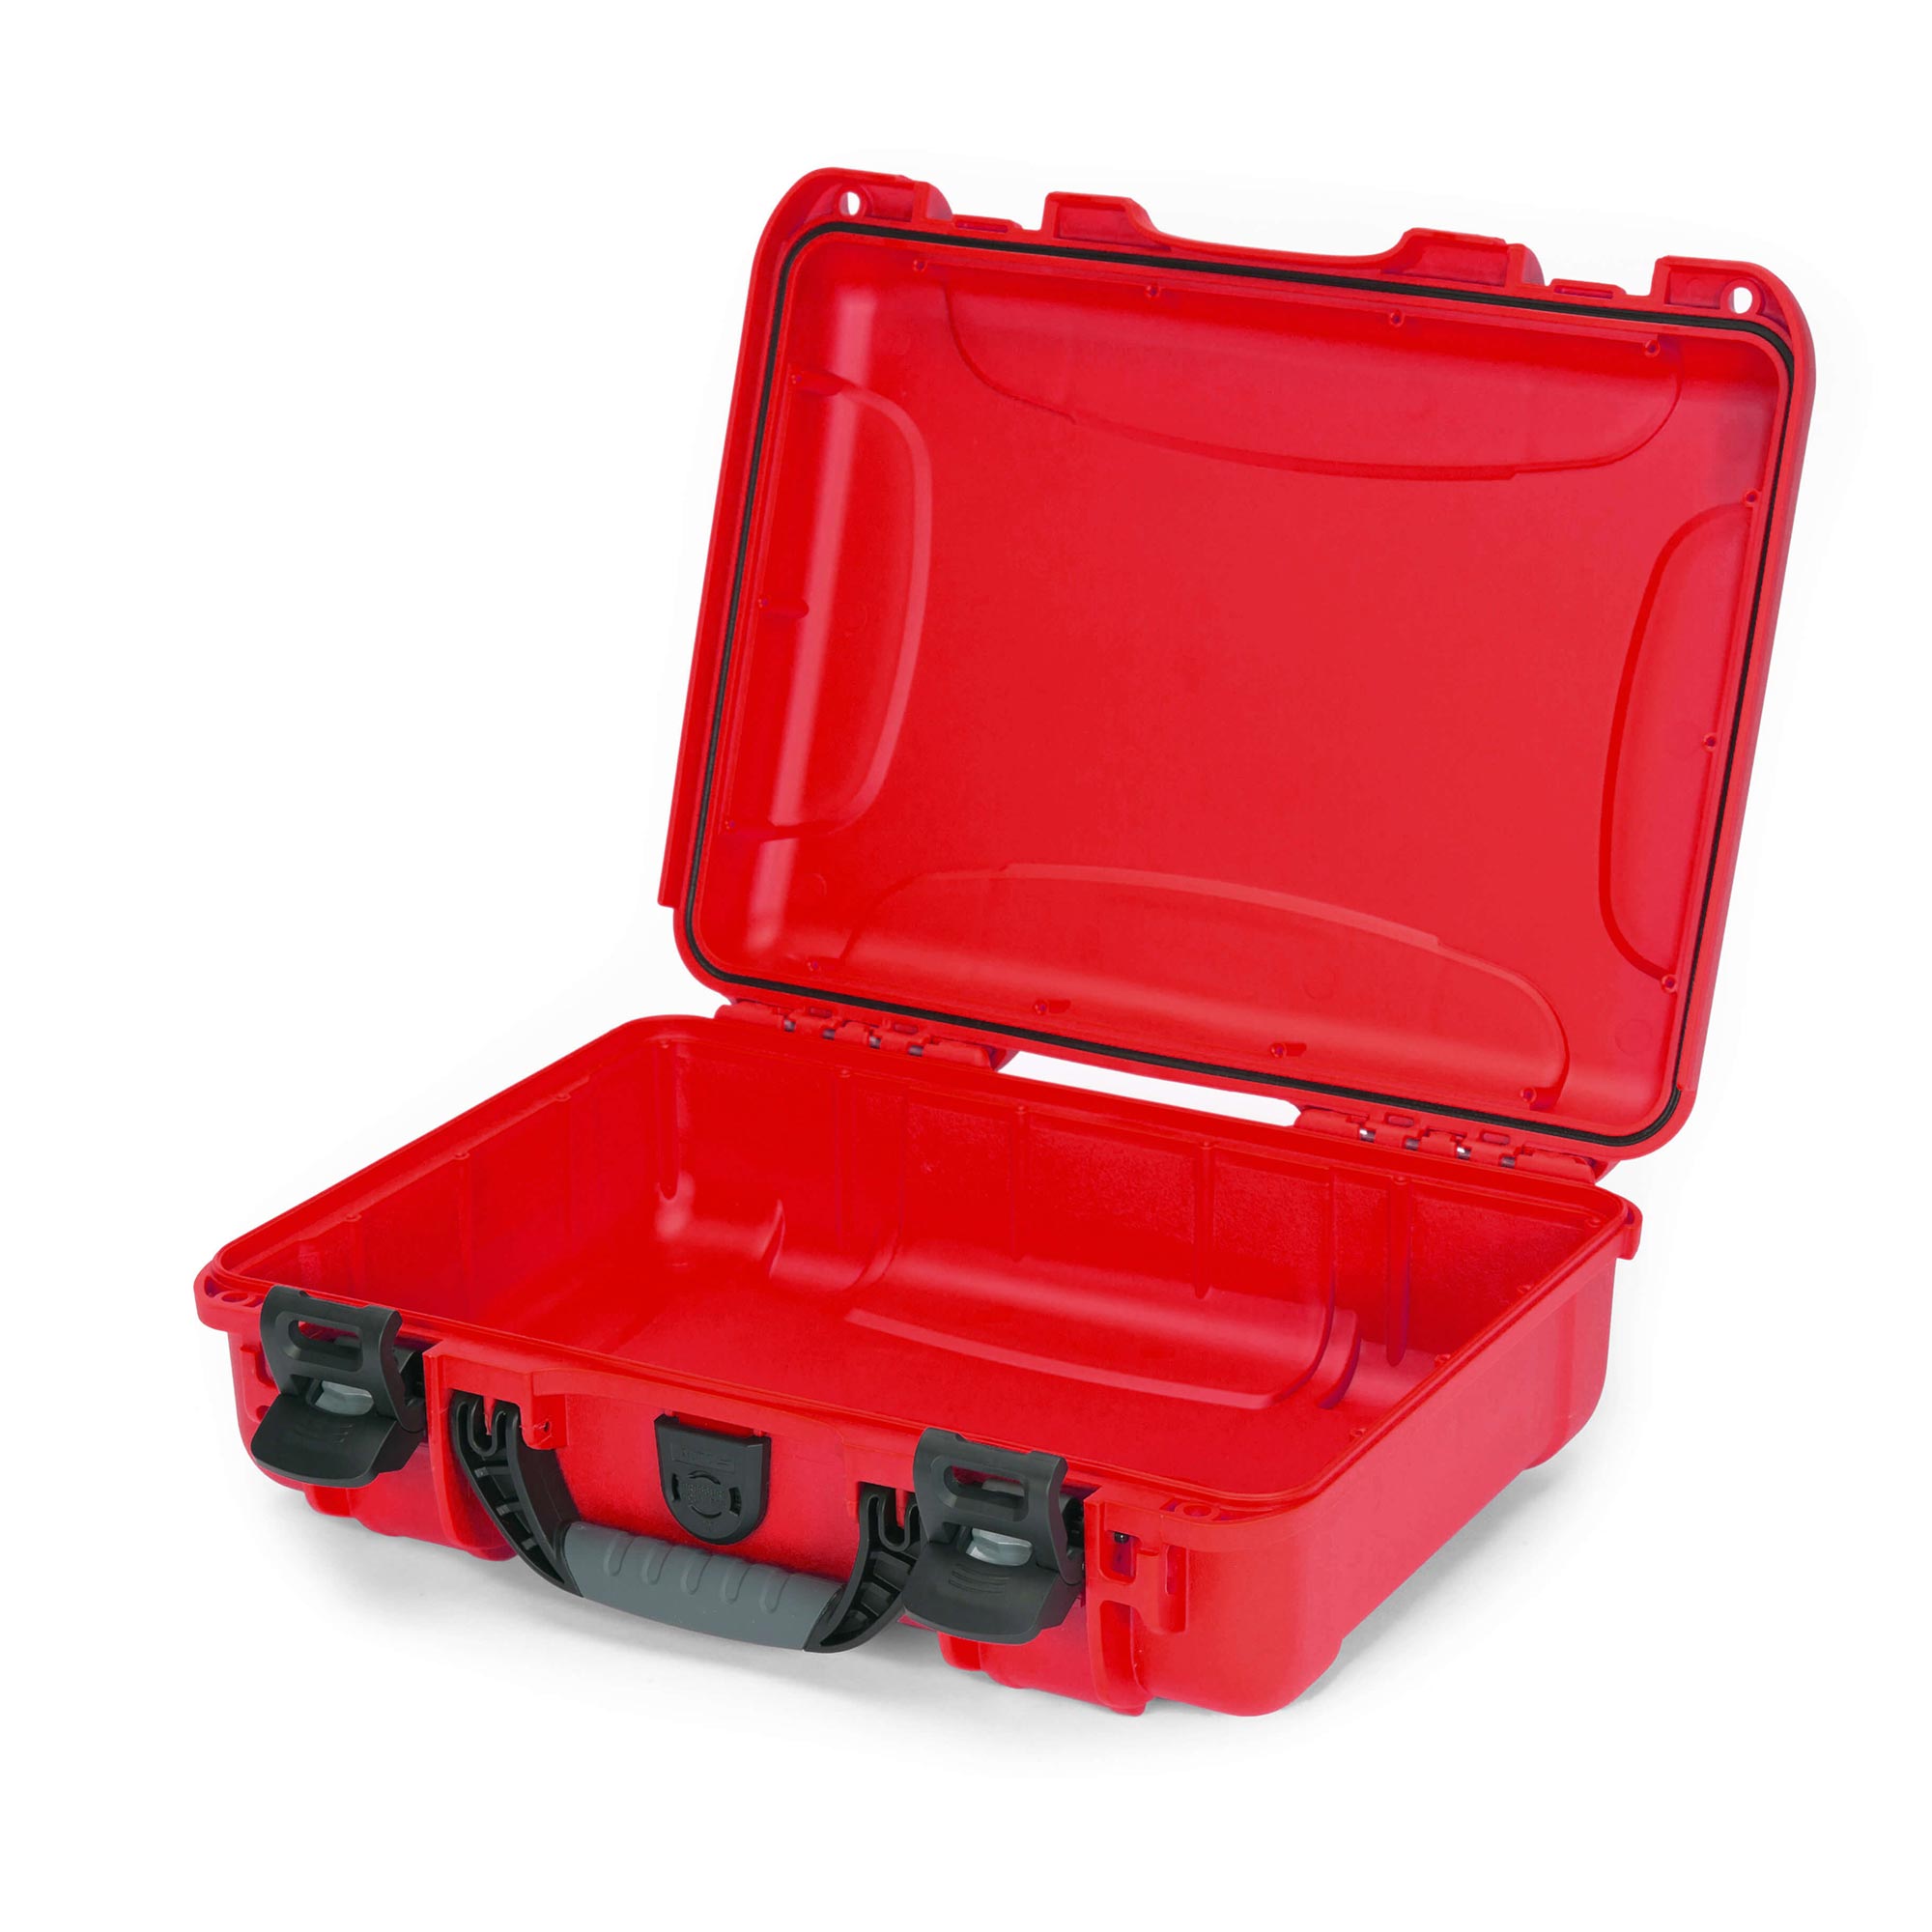 NANUK 910 valise de premiers secours - valise extérieur - Rouge - NANUK